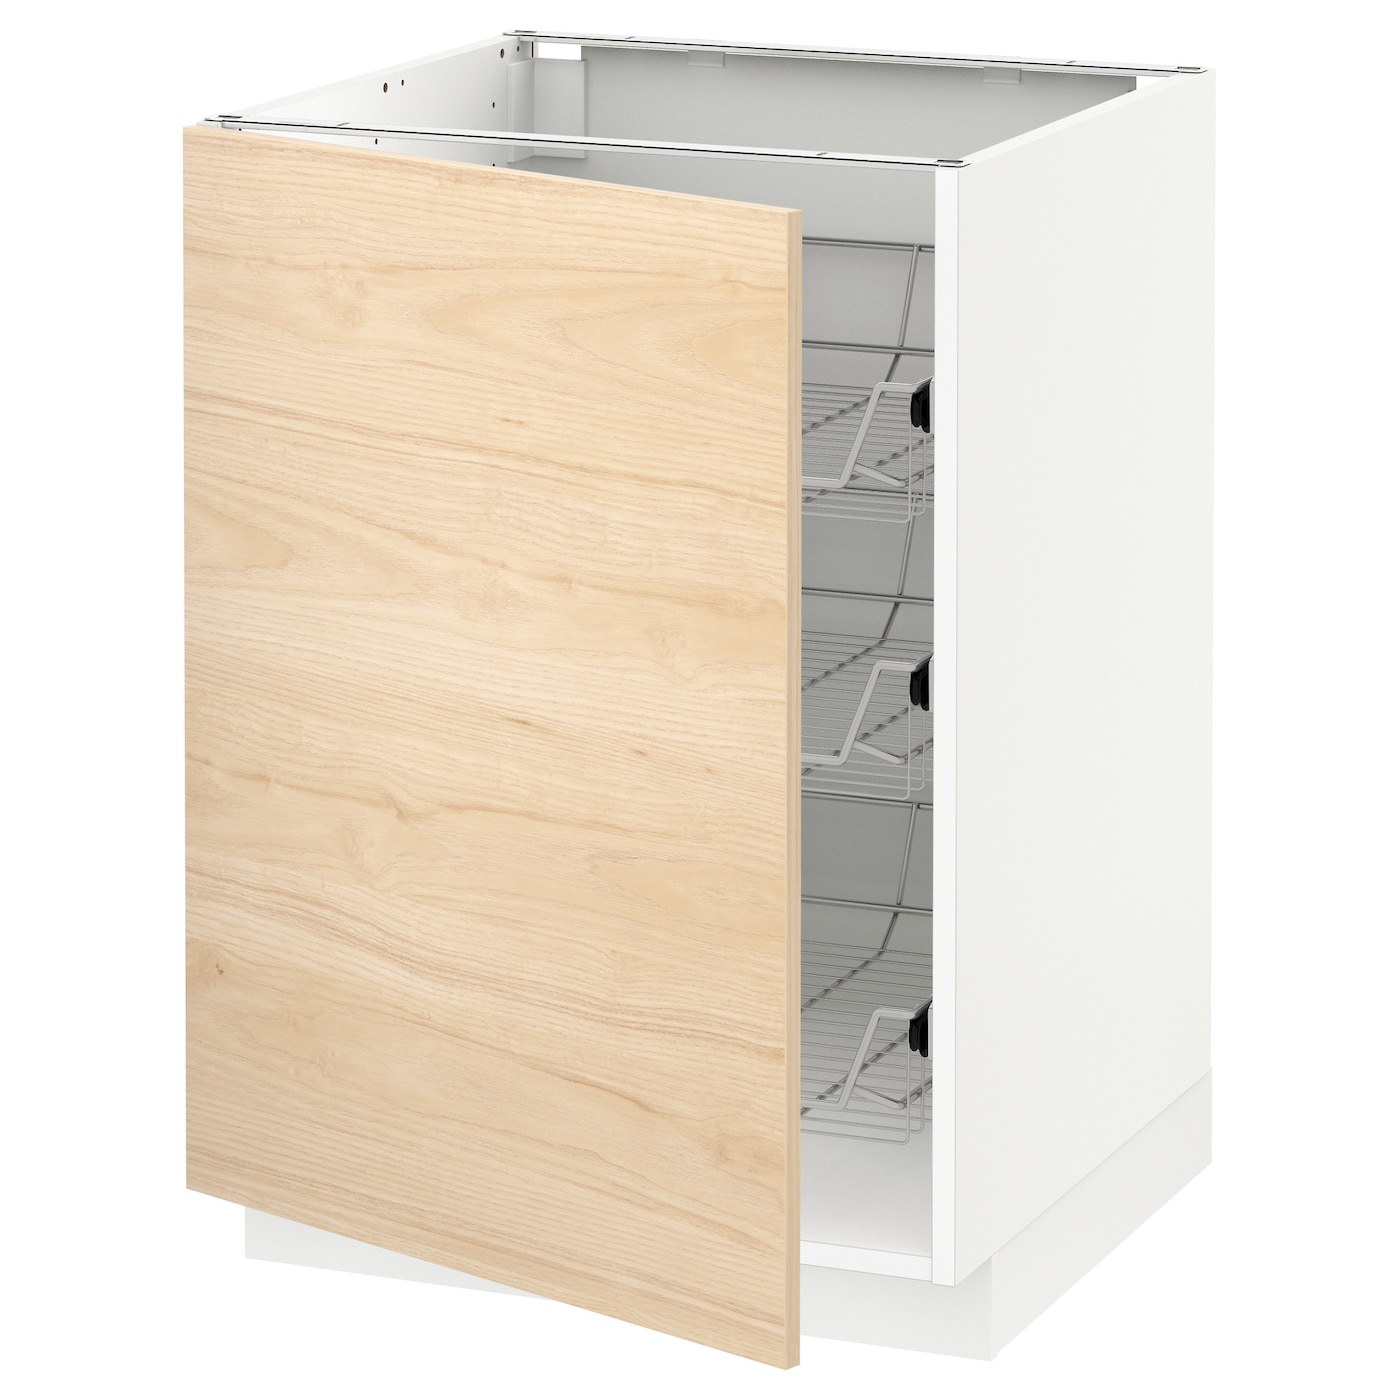 Напольный шкаф - METOD IKEA/ МЕТОД ИКЕА,  88х60 см, белый/под беленый дуб